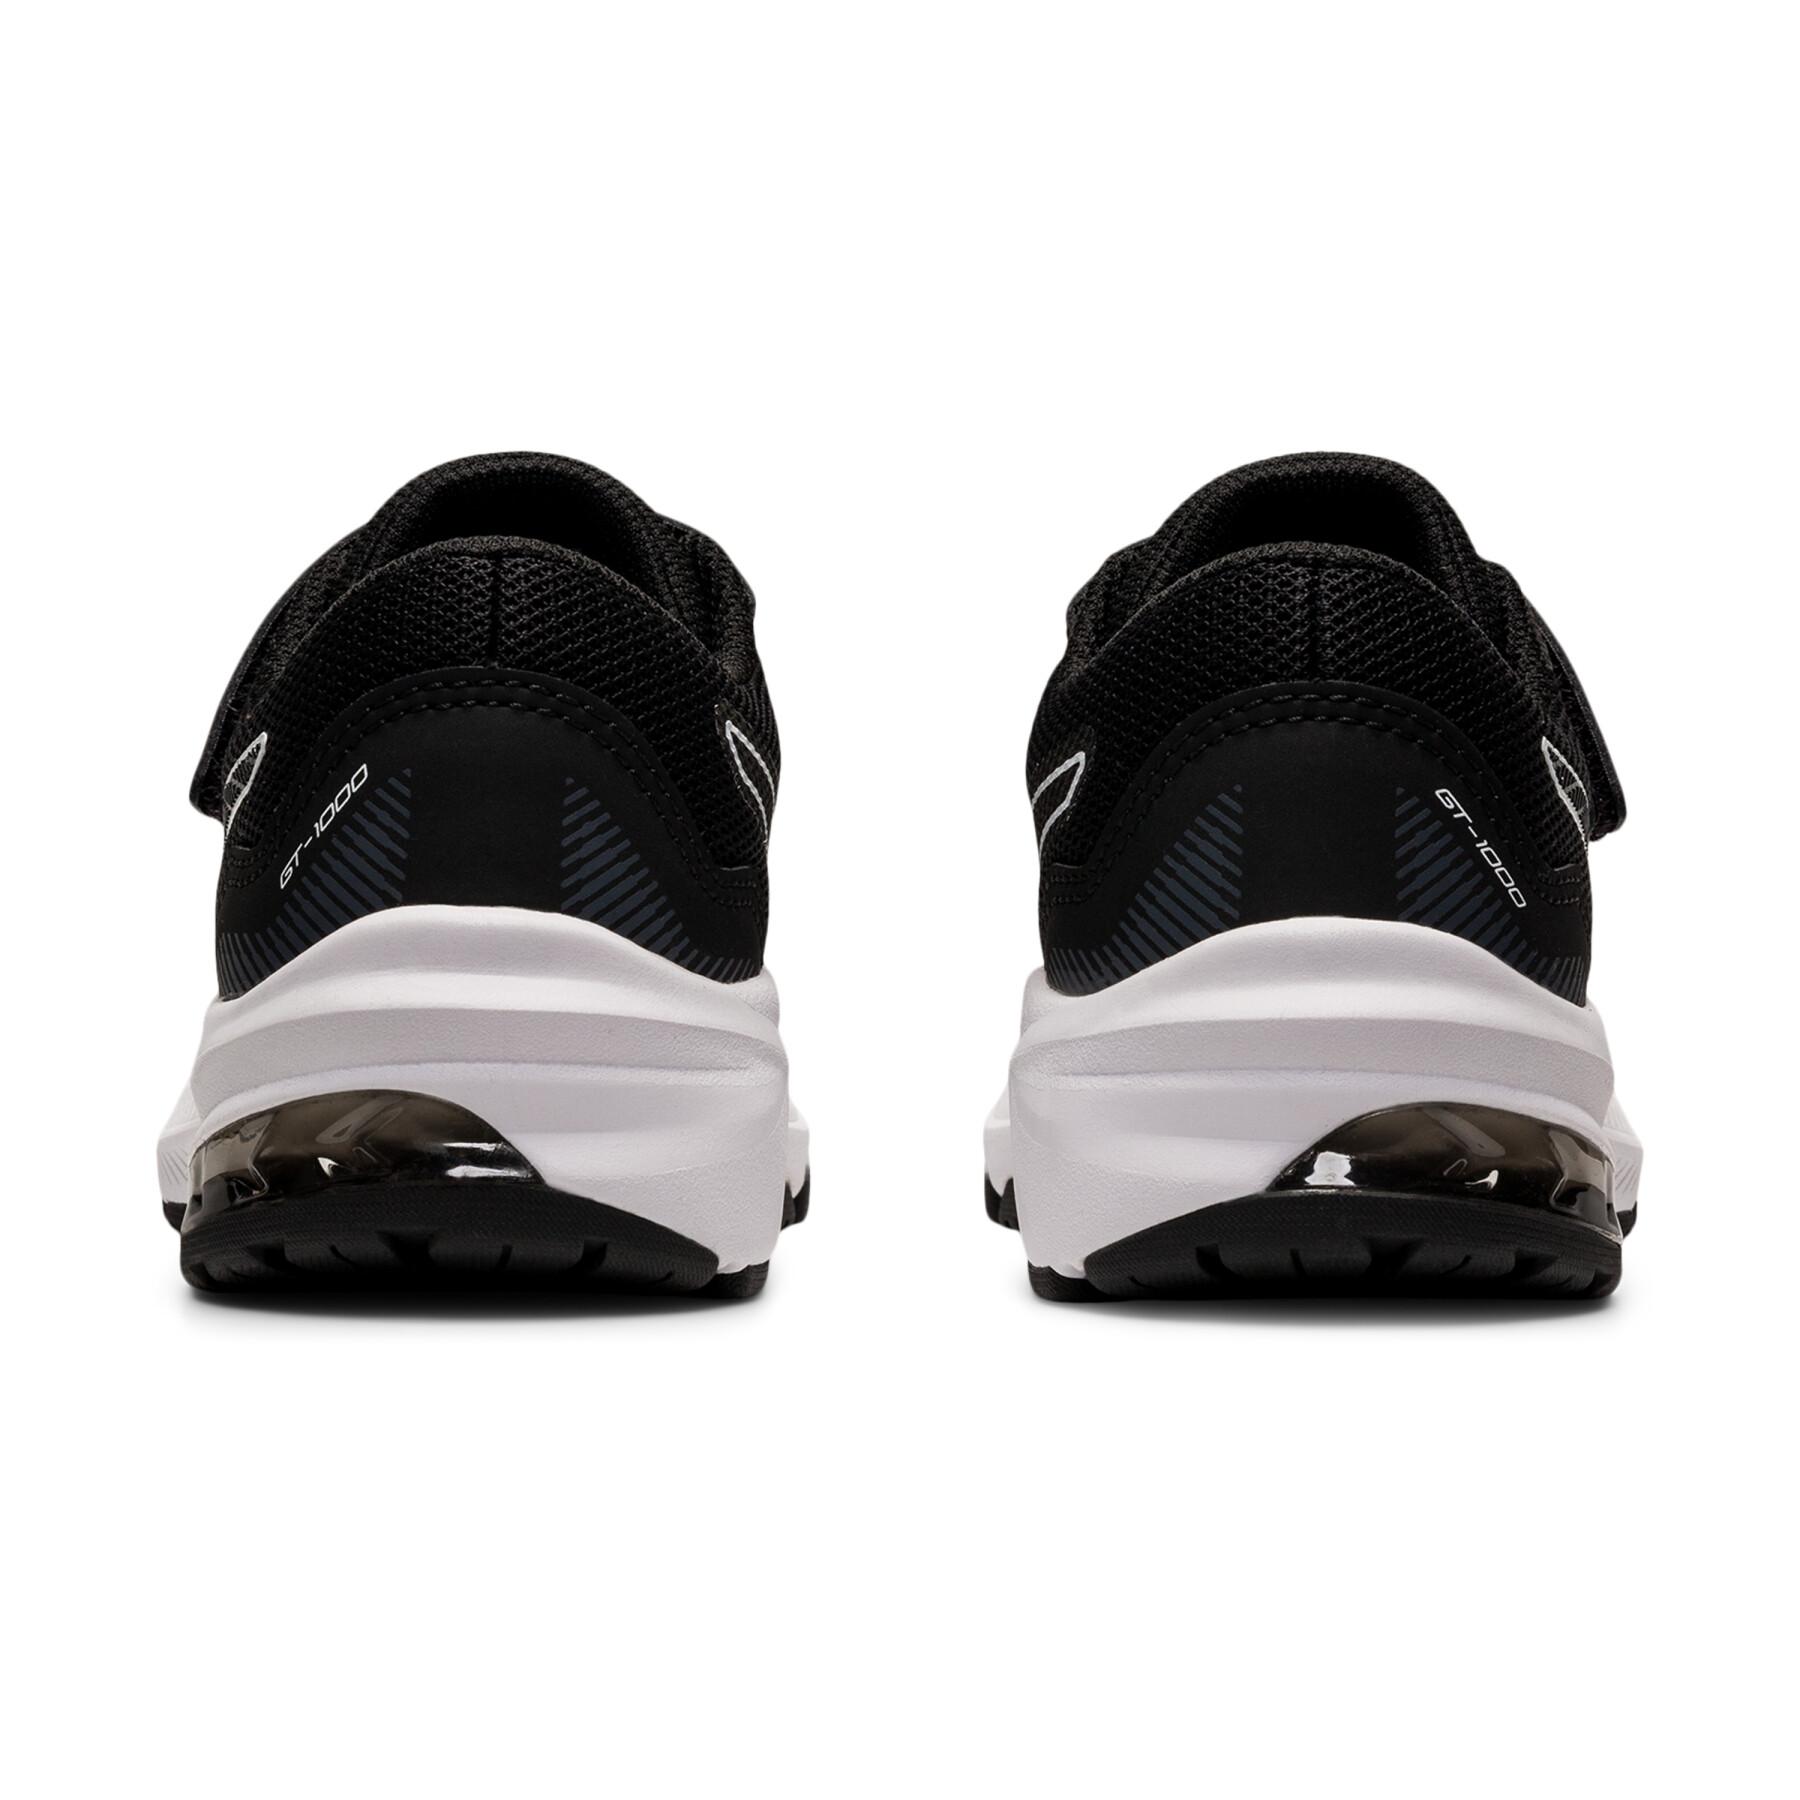 Chaussures de running enfant Asics Gt-1000 11 Ps